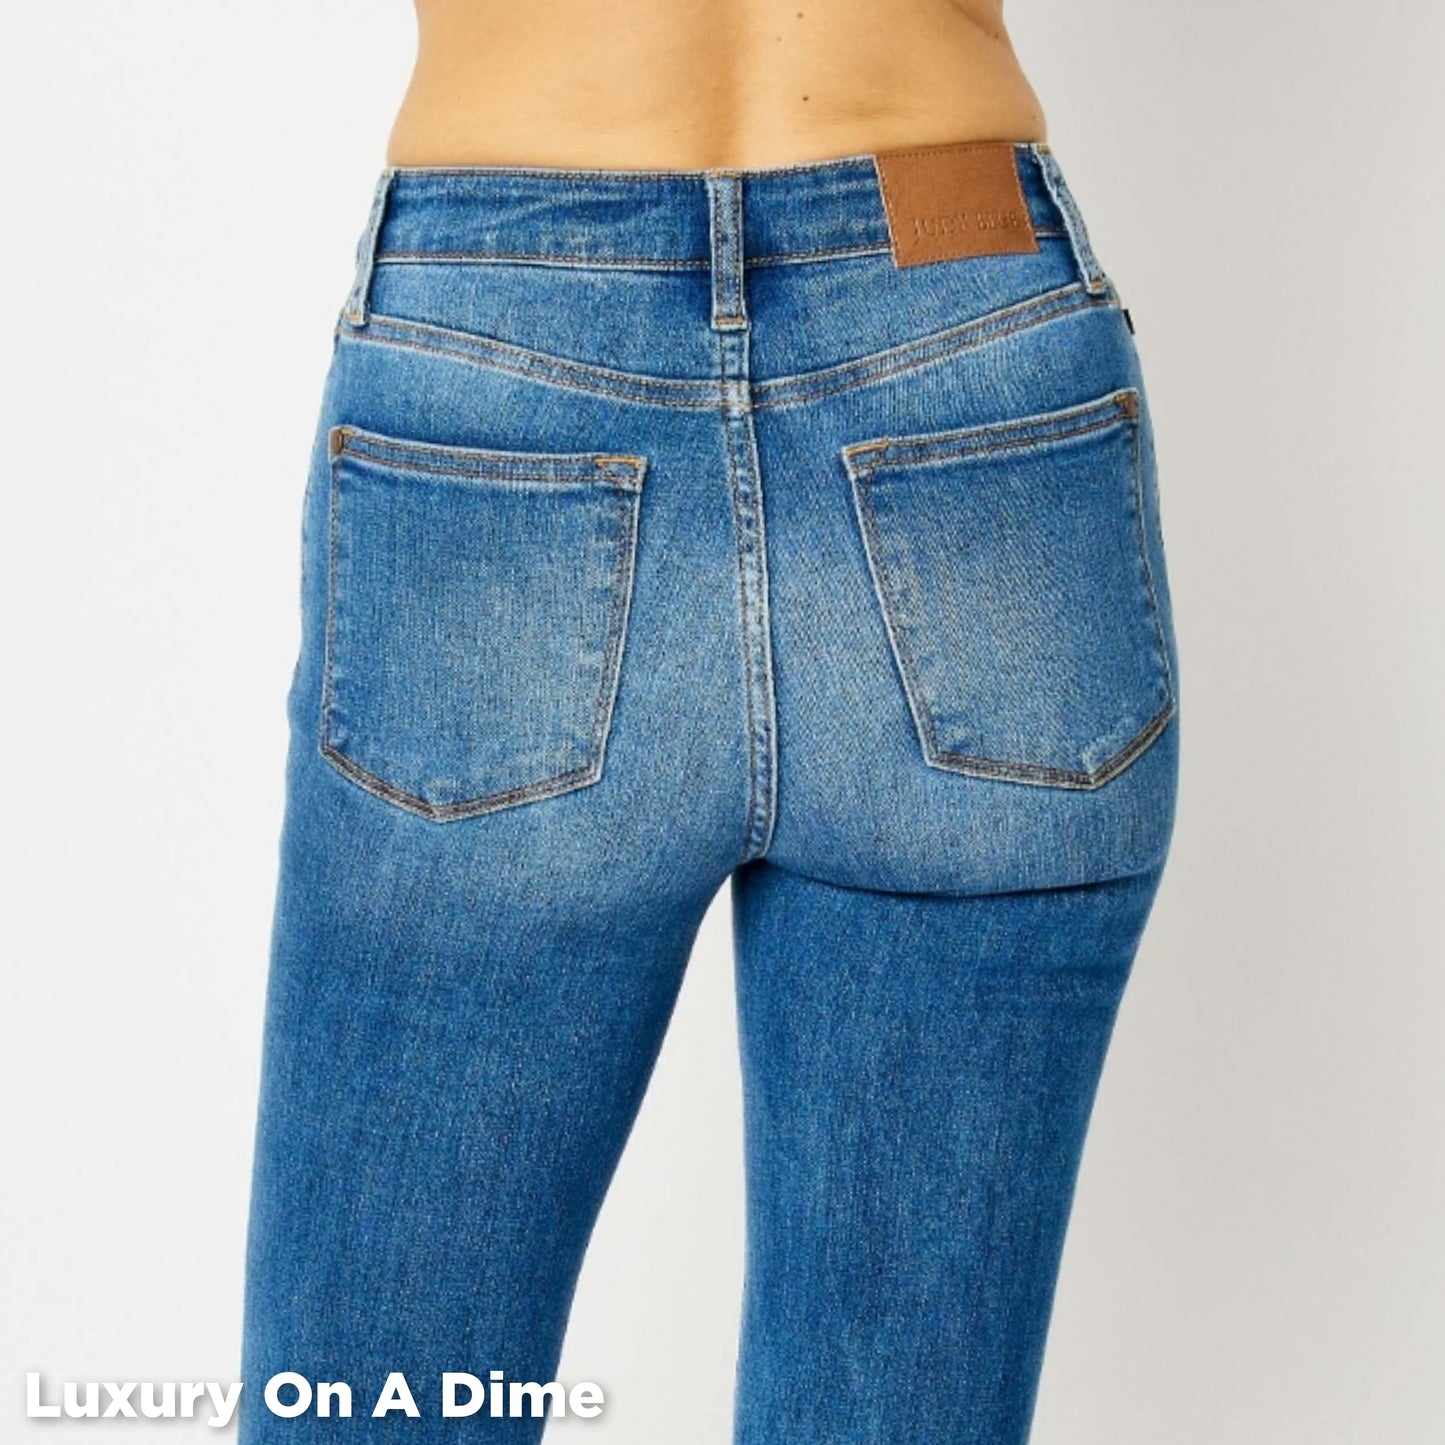 Skinny Stretch Slim Mid-Rise Denim Pants Cuffed Hem Judy Blue Jeans